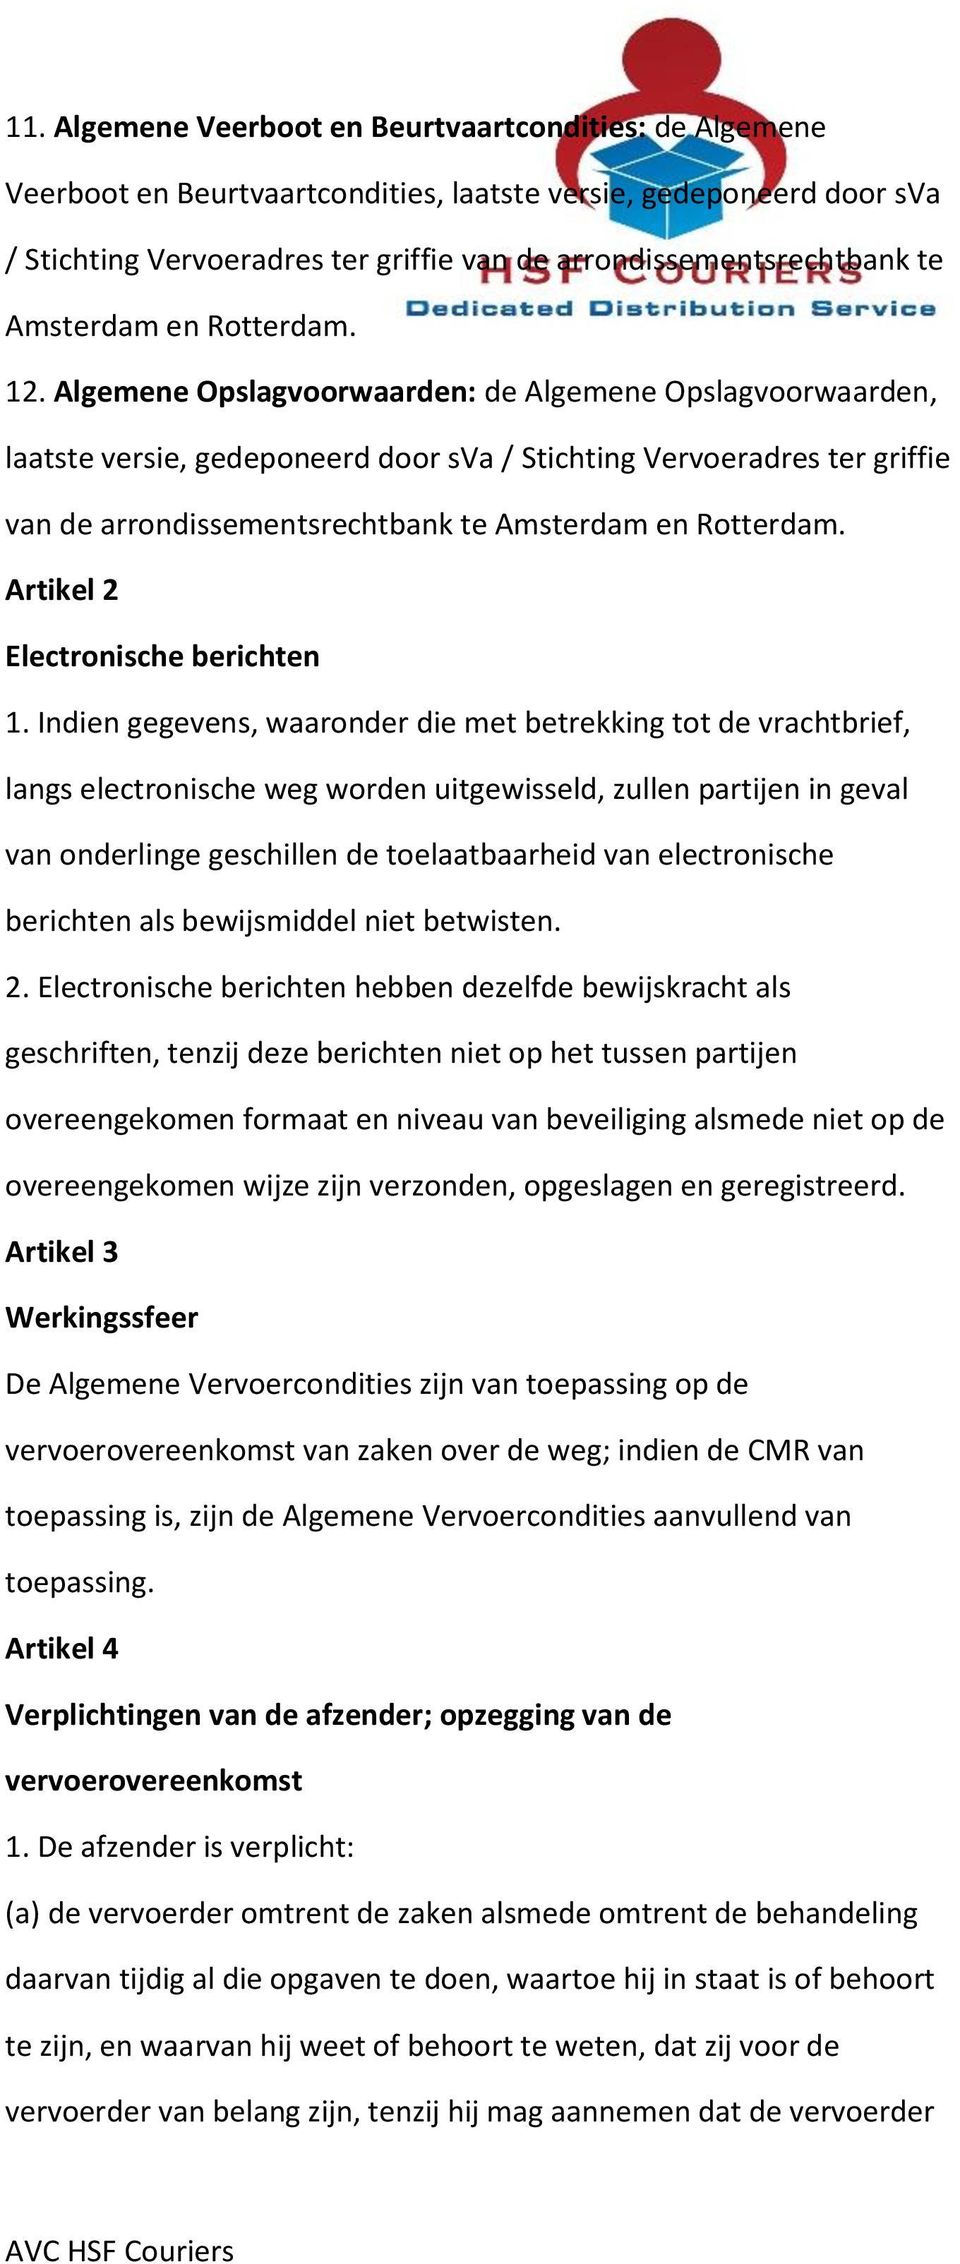 Algemene Opslagvoorwaarden: de Algemene Opslagvoorwaarden, laatste versie, gedeponeerd door sva / Stichting Vervoeradres ter griffie van de arrondissementsrechtbank te Amsterdam en Rotterdam.